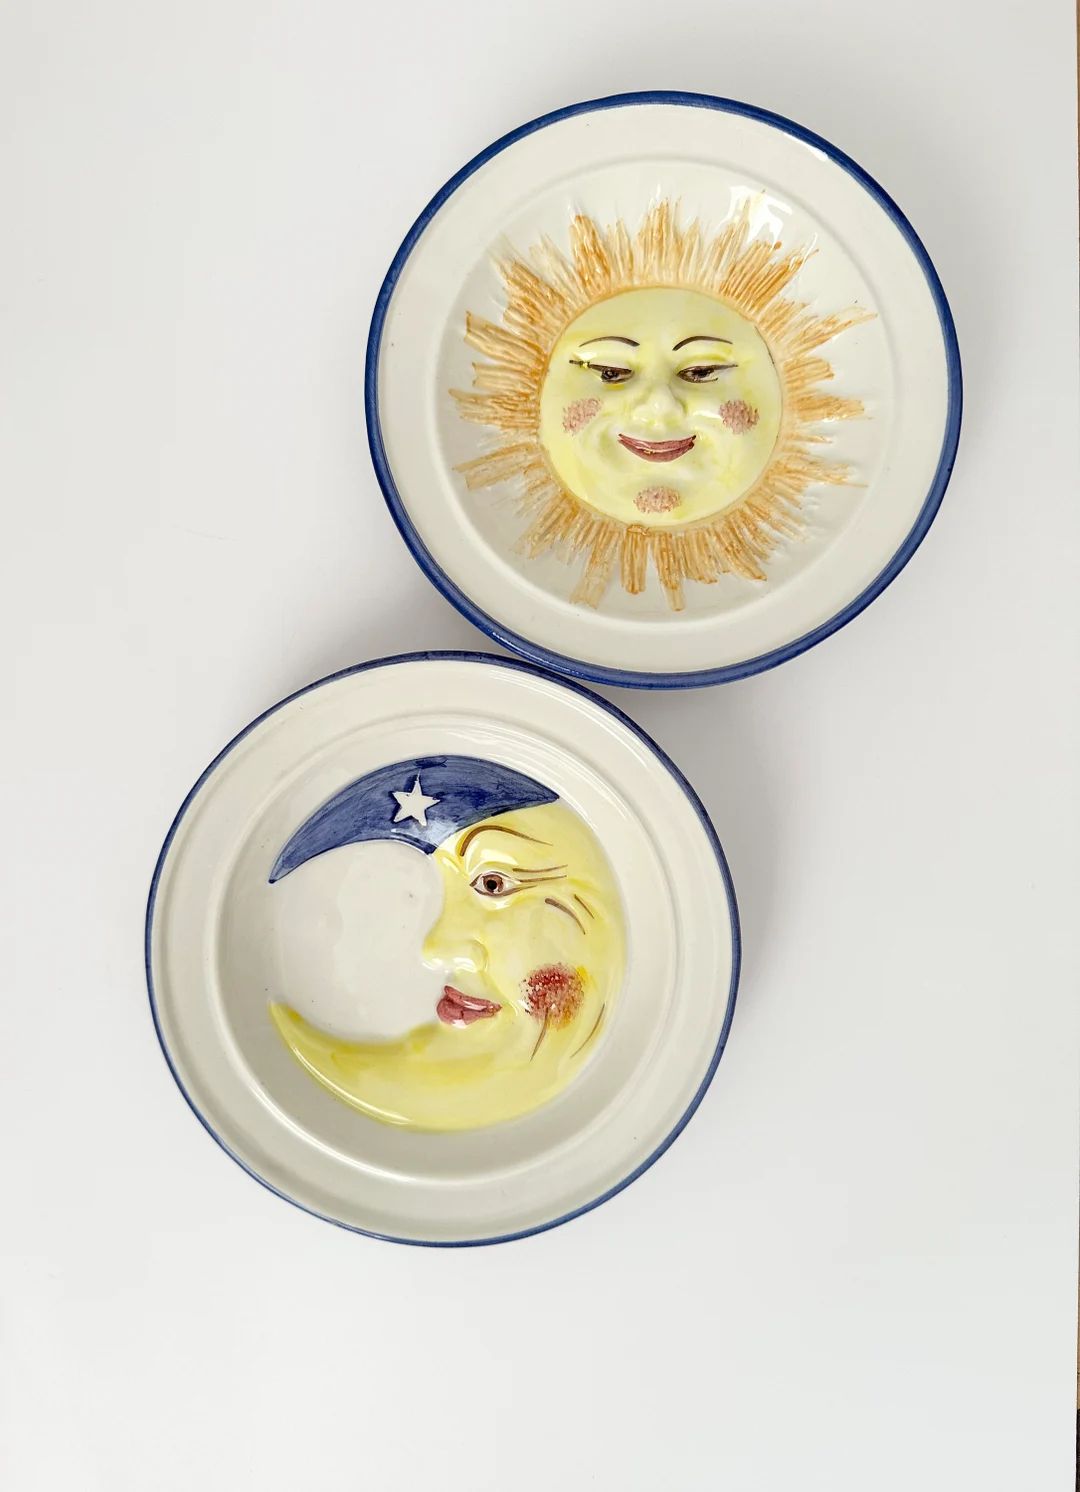 Moon and Sun Face Bassano Italy Ceramic Pottery Plates by ABC - Etsy UK | Etsy (UK)